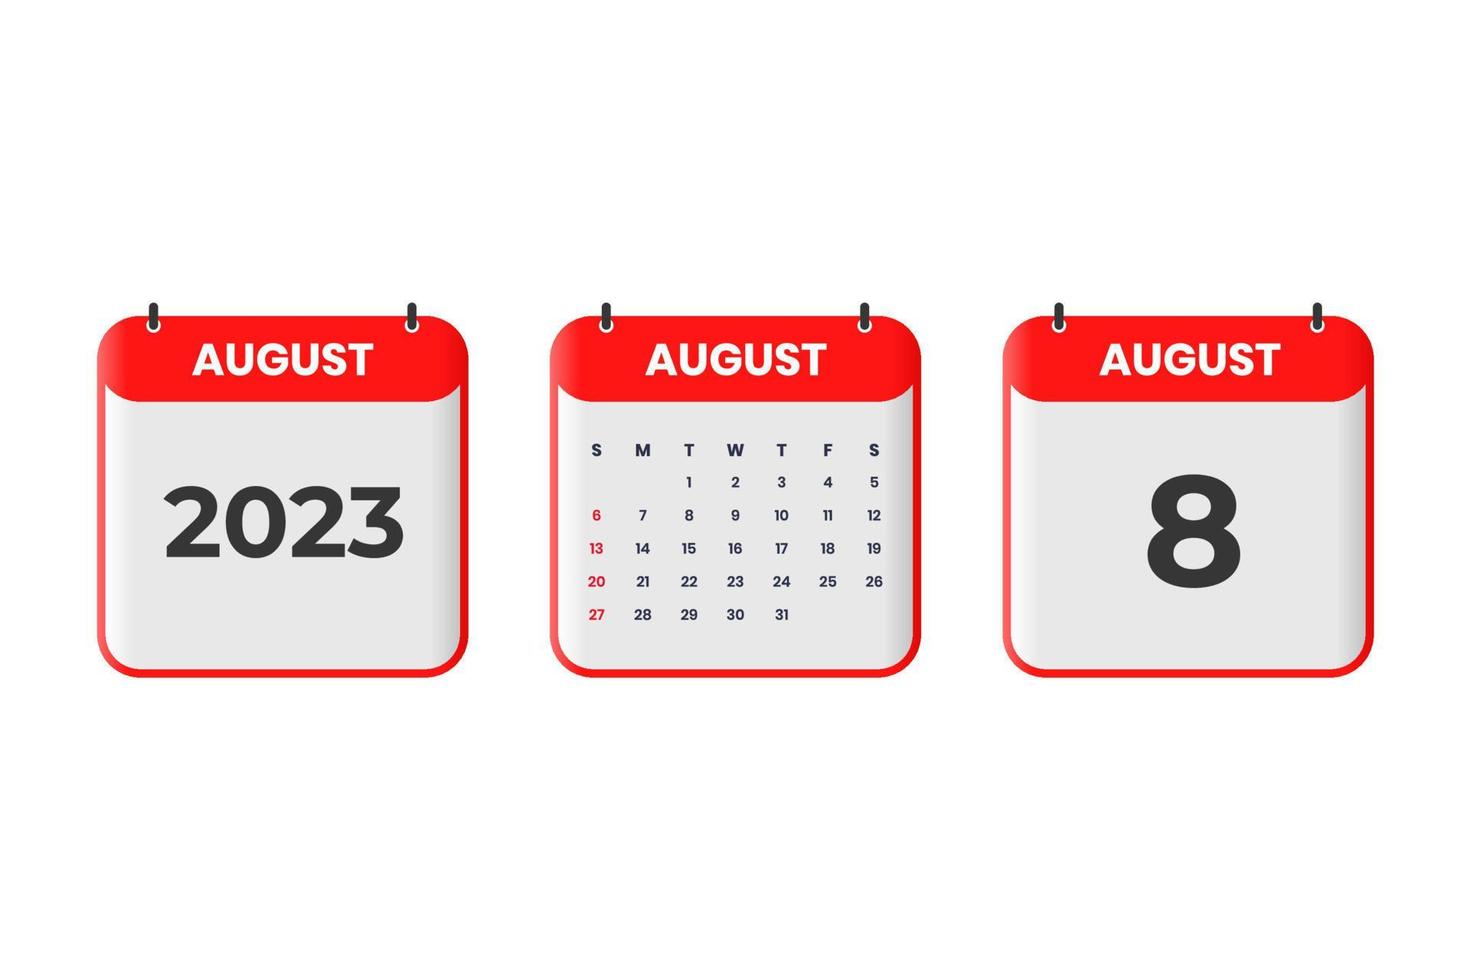 August 2023 Kalenderdesign. 8. August 2023 Kalendersymbol für Zeitplan, Termin, wichtiges Datumskonzept vektor